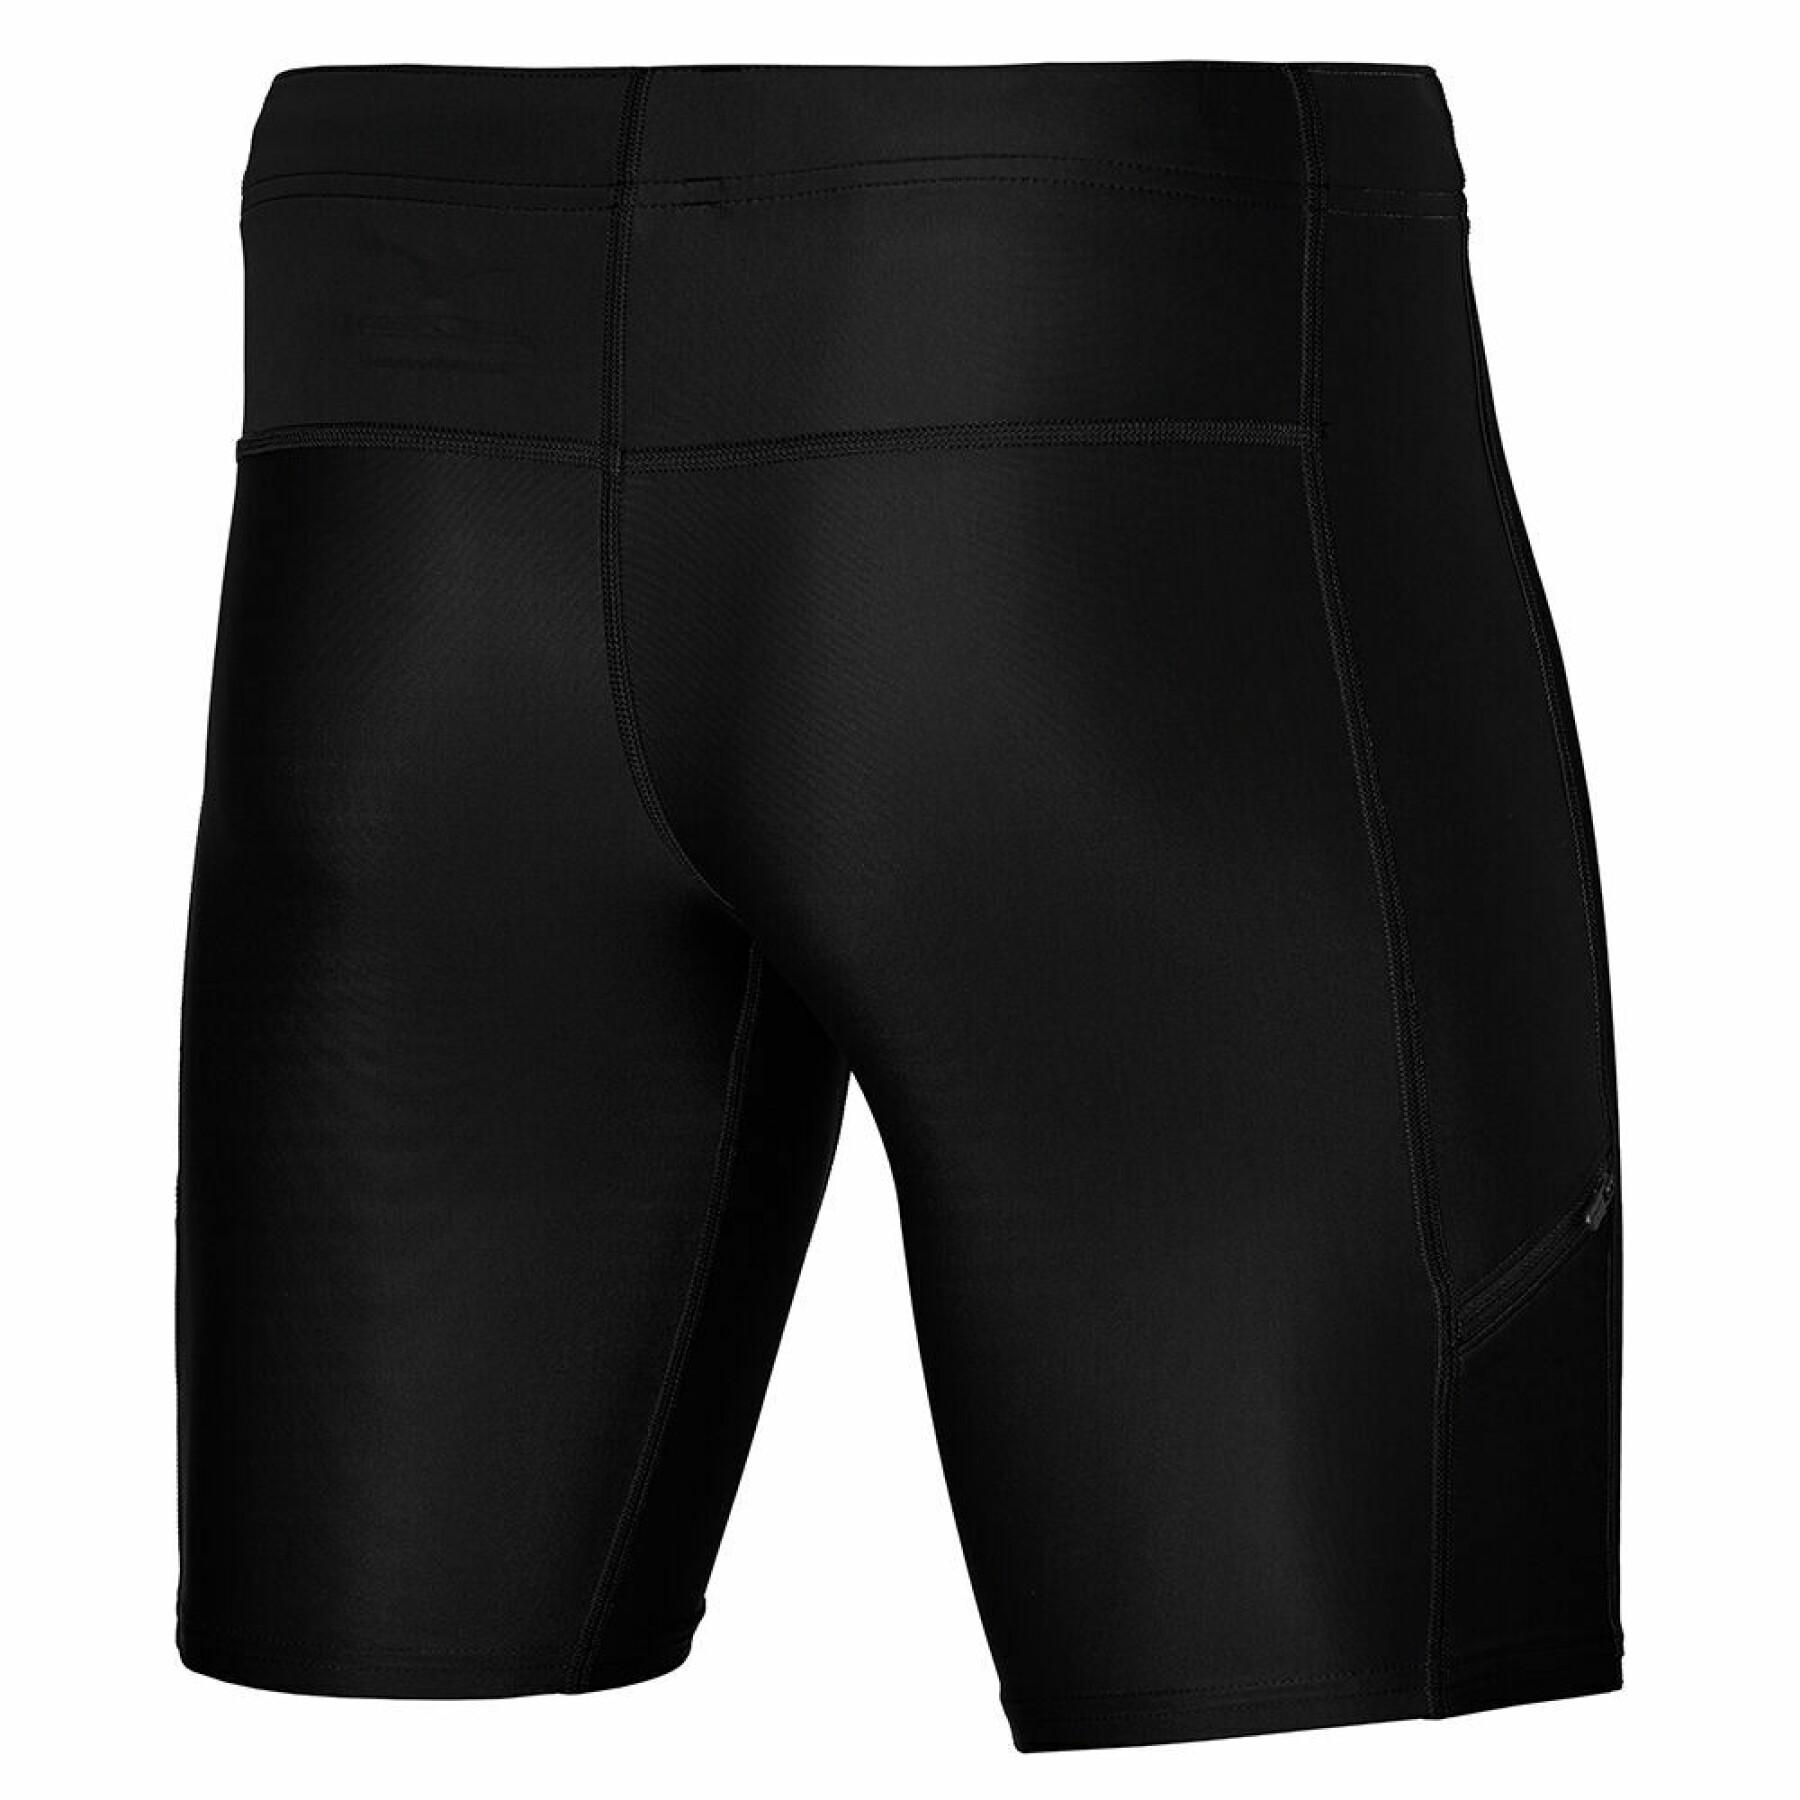 Mid shorts Mizuno Core